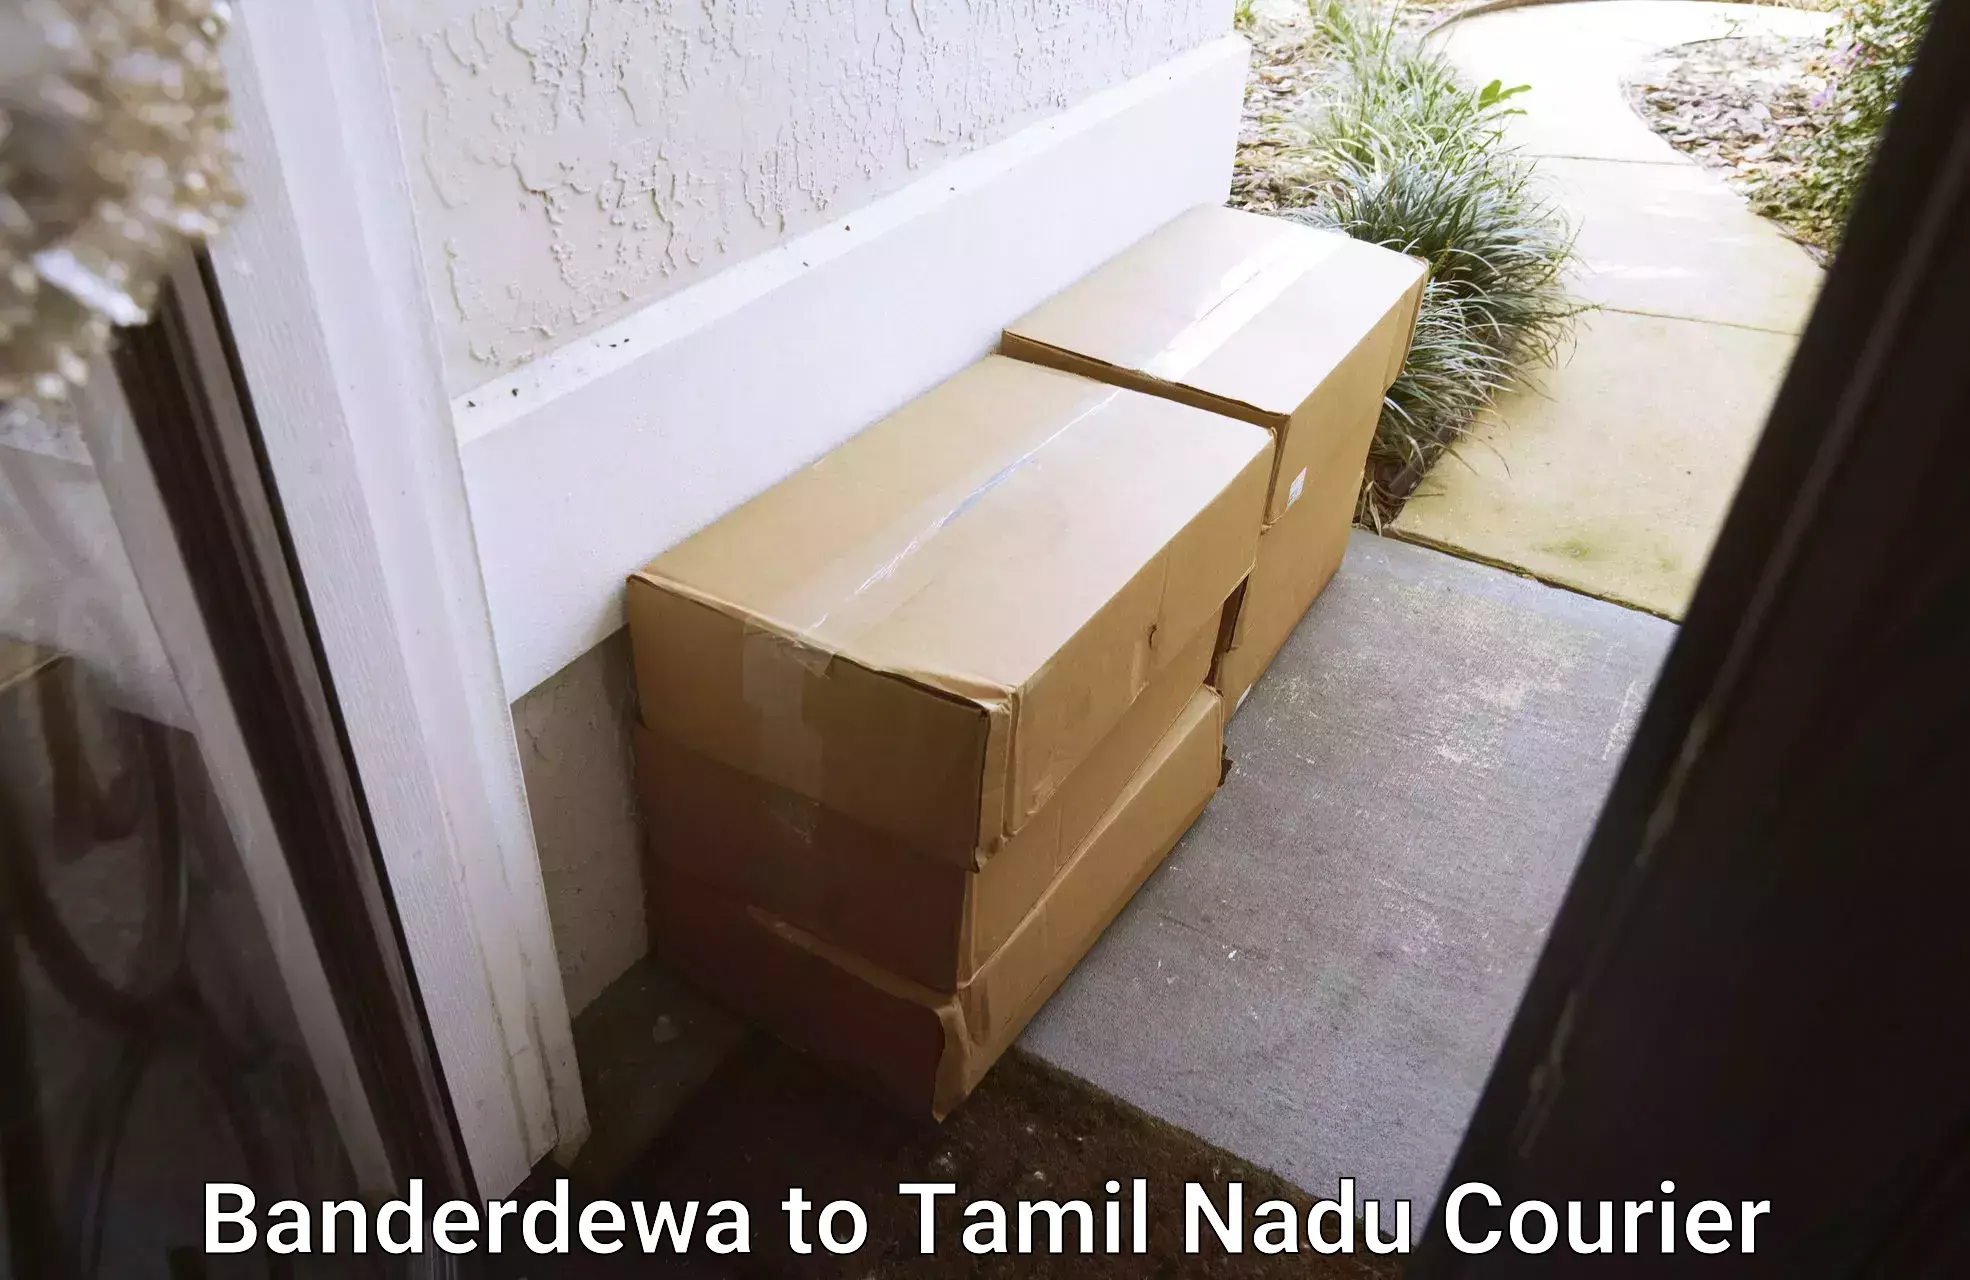 Next-generation courier services Banderdewa to Ramanathapuram